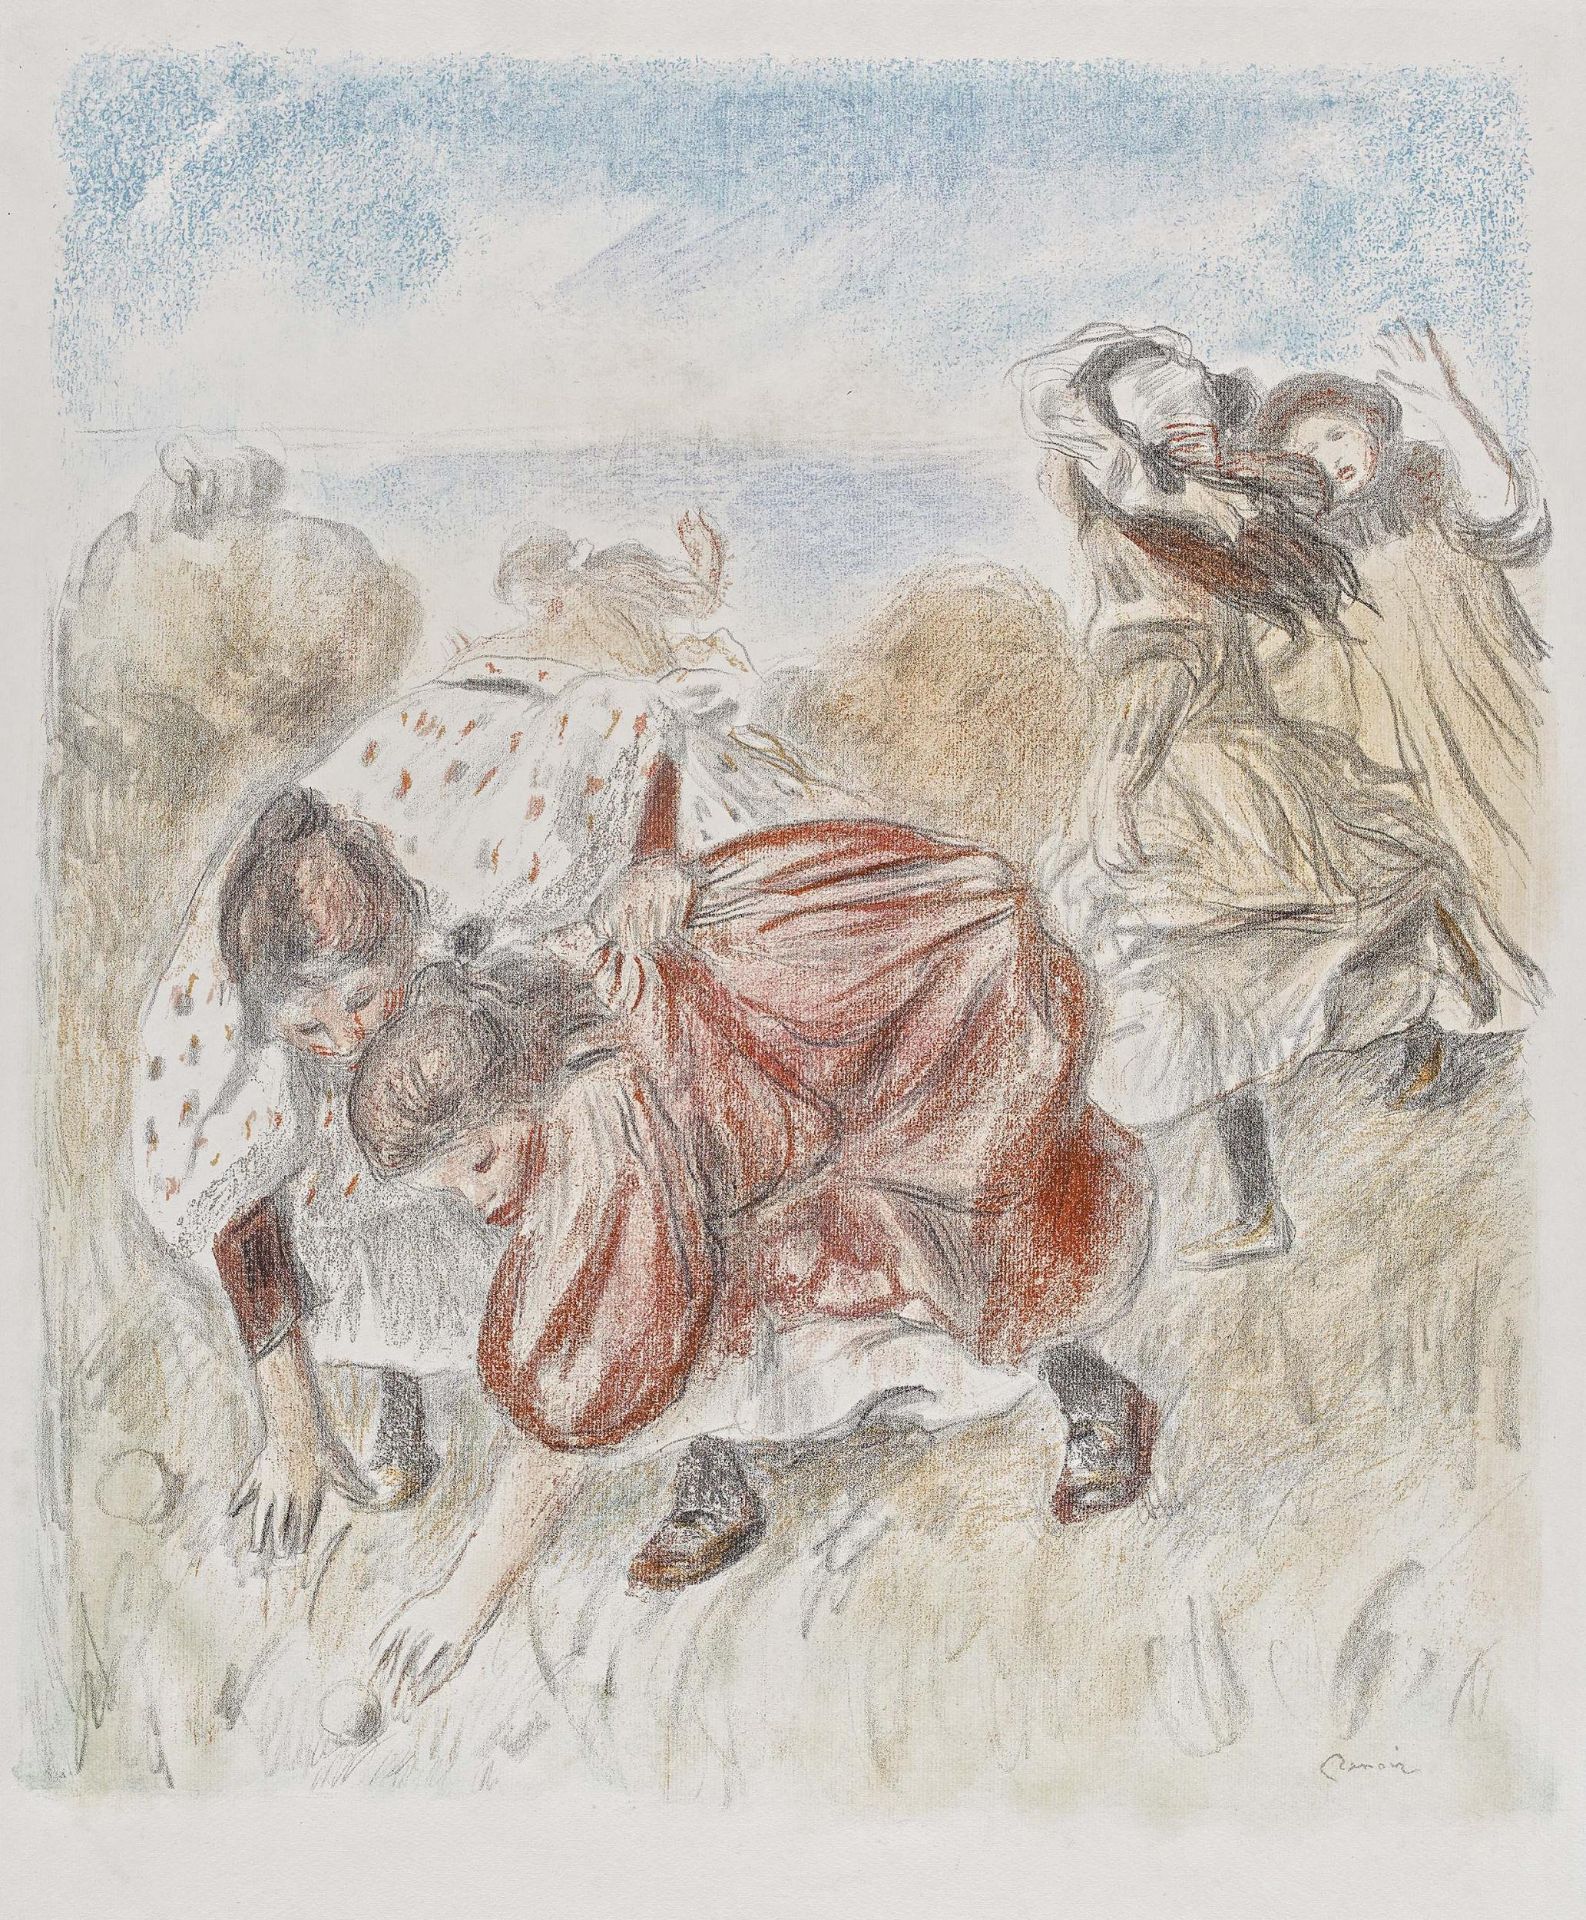 Renoir, Pierre-Auguste1841 Limoges - 1919 Cagnes/NiceEnfants jouant à la balle. 1900. Colour